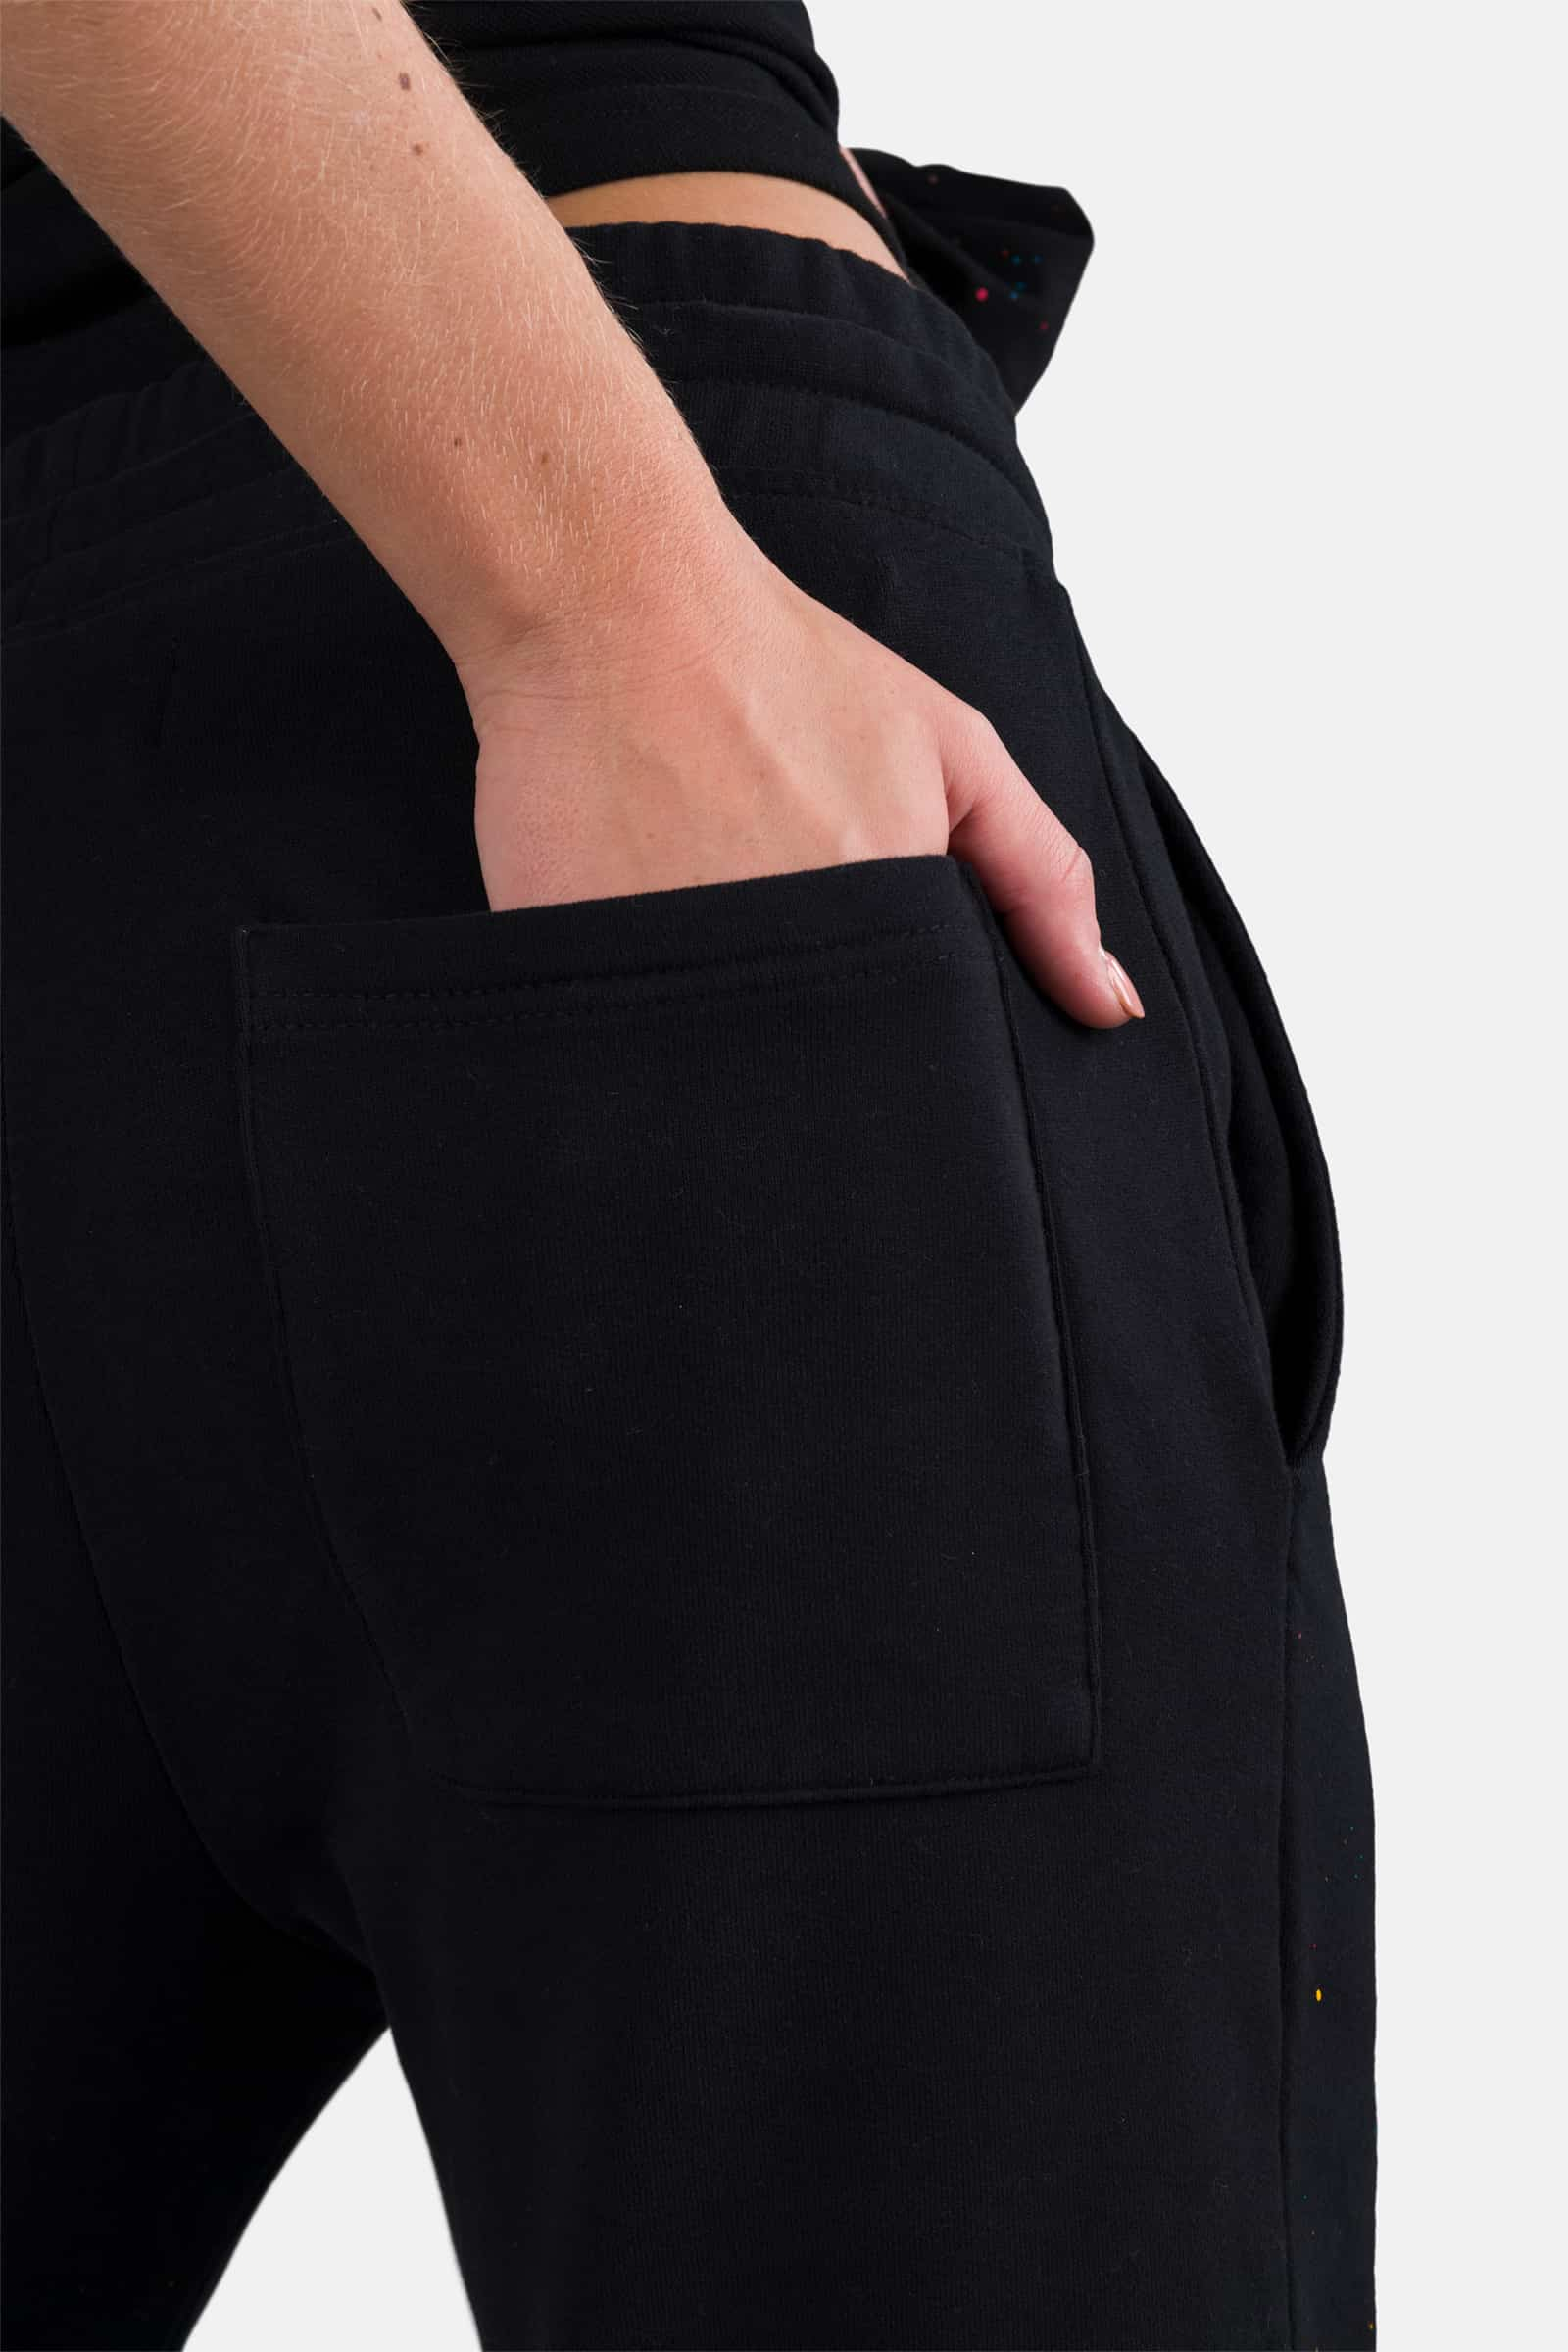 PRINTED PANTS - BLACK PAINT - Hydrogen - Luxury Sportwear